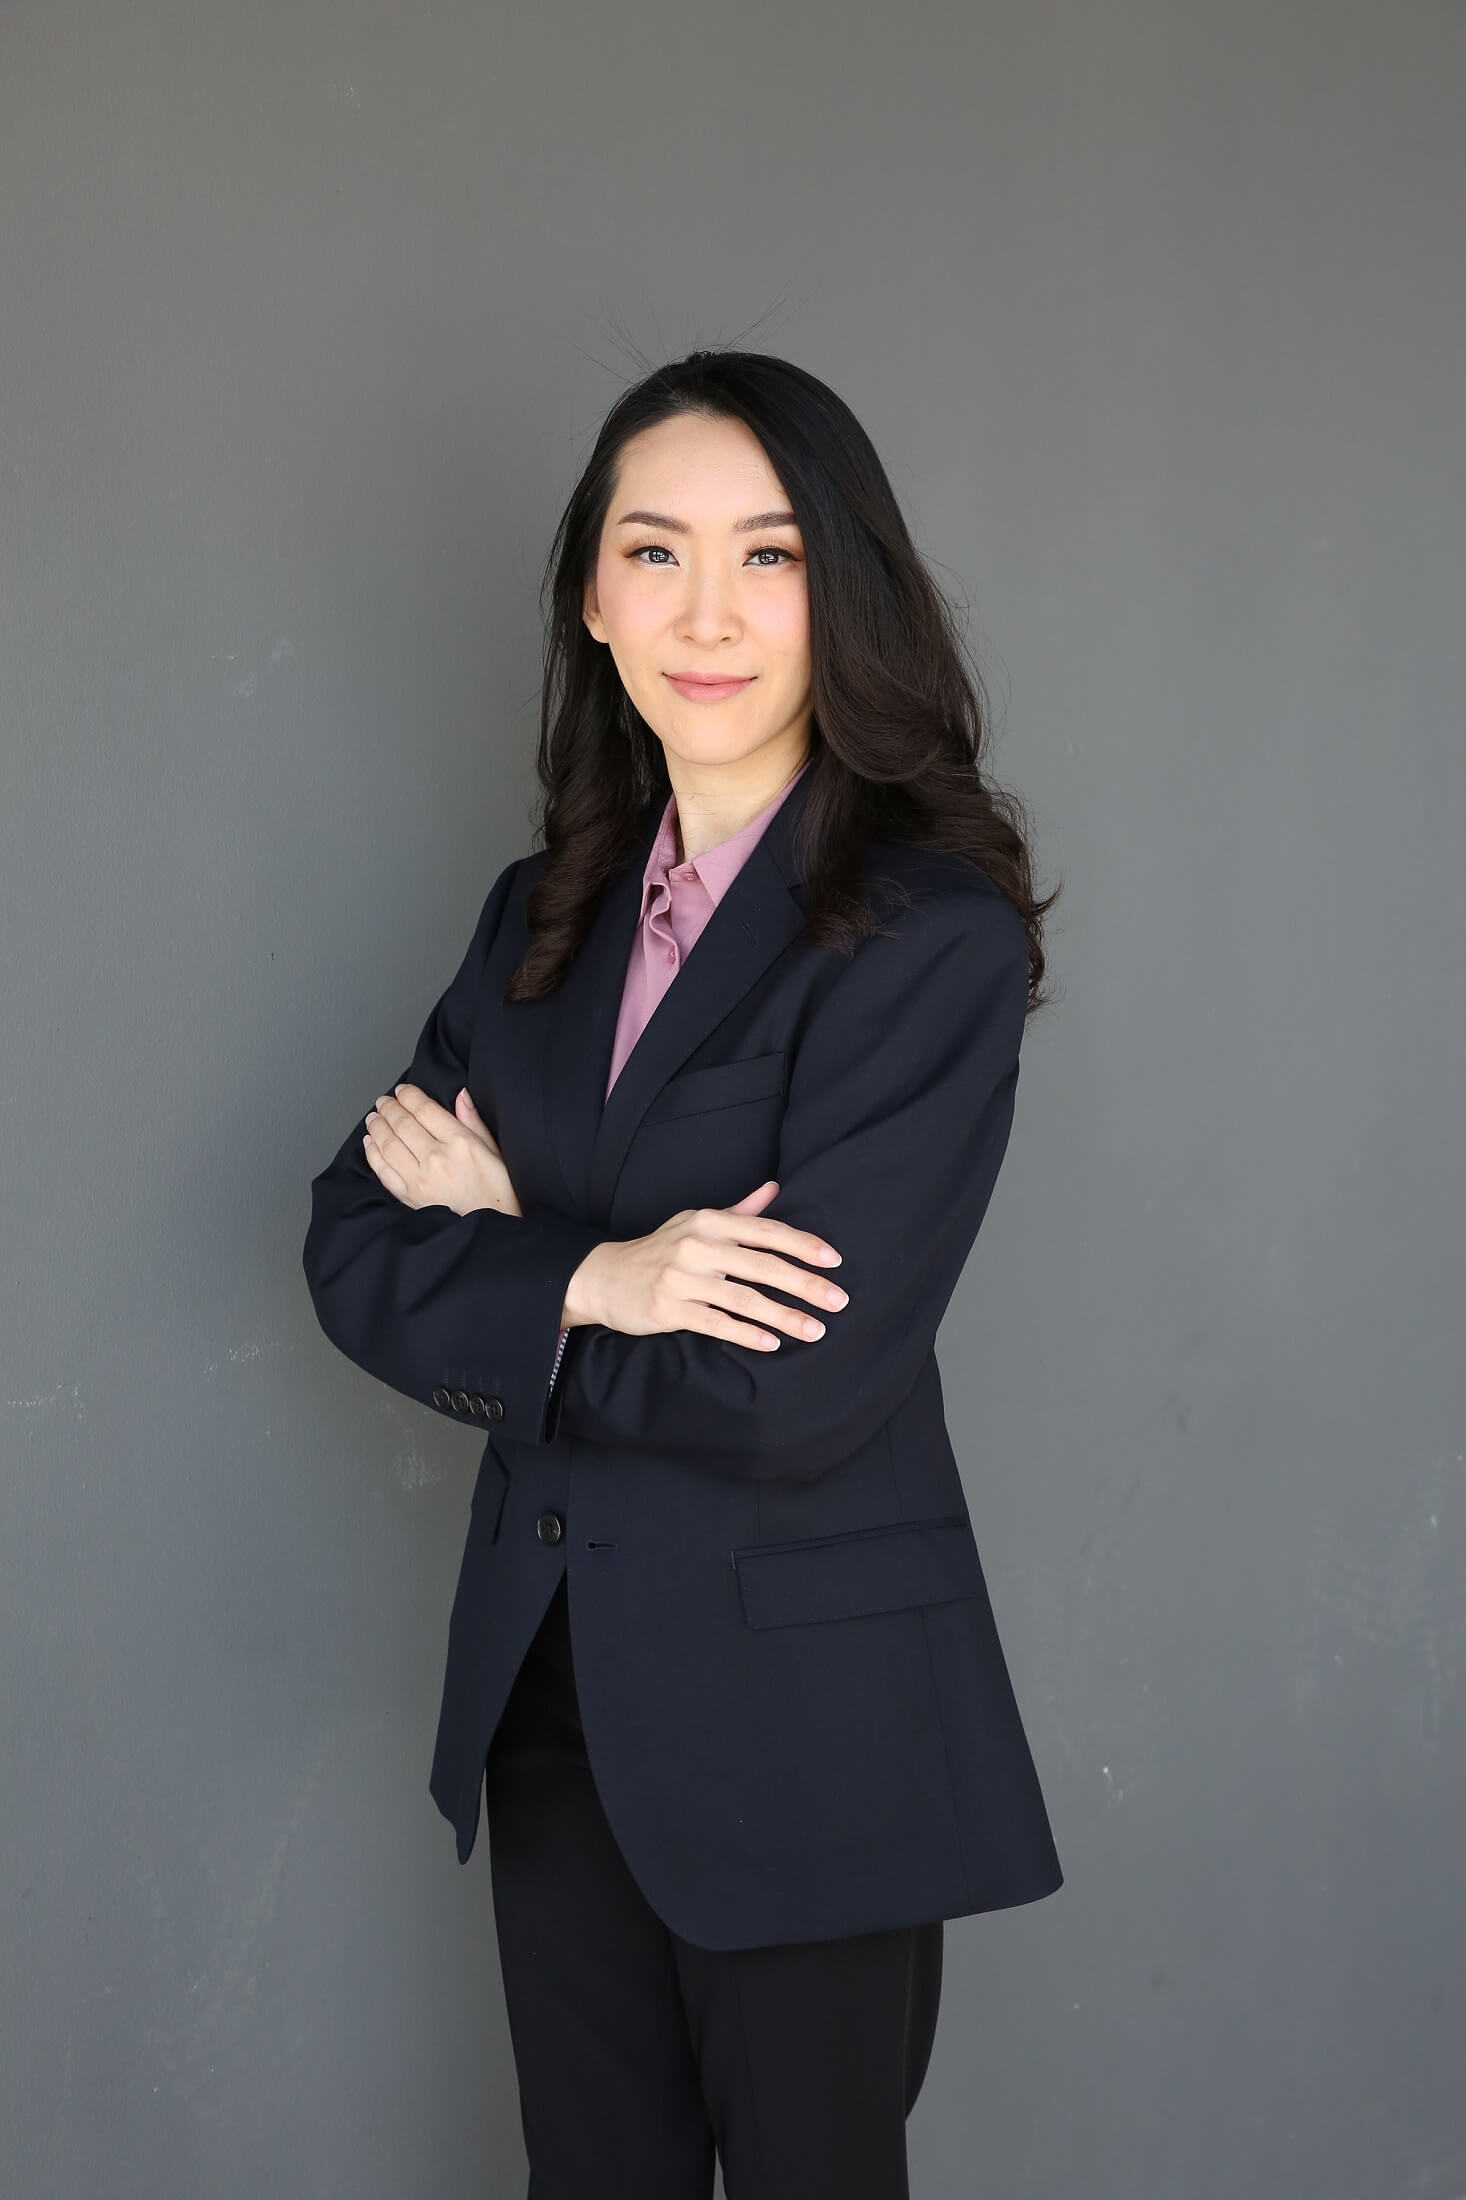 คุณเขมจิรา เทศประทีป ผู้อำนวยการฝ่ายการตลาดและประชาสัมพันธ์ บริษัท ยูนิโคล่ (ประเทศไทย) (1)